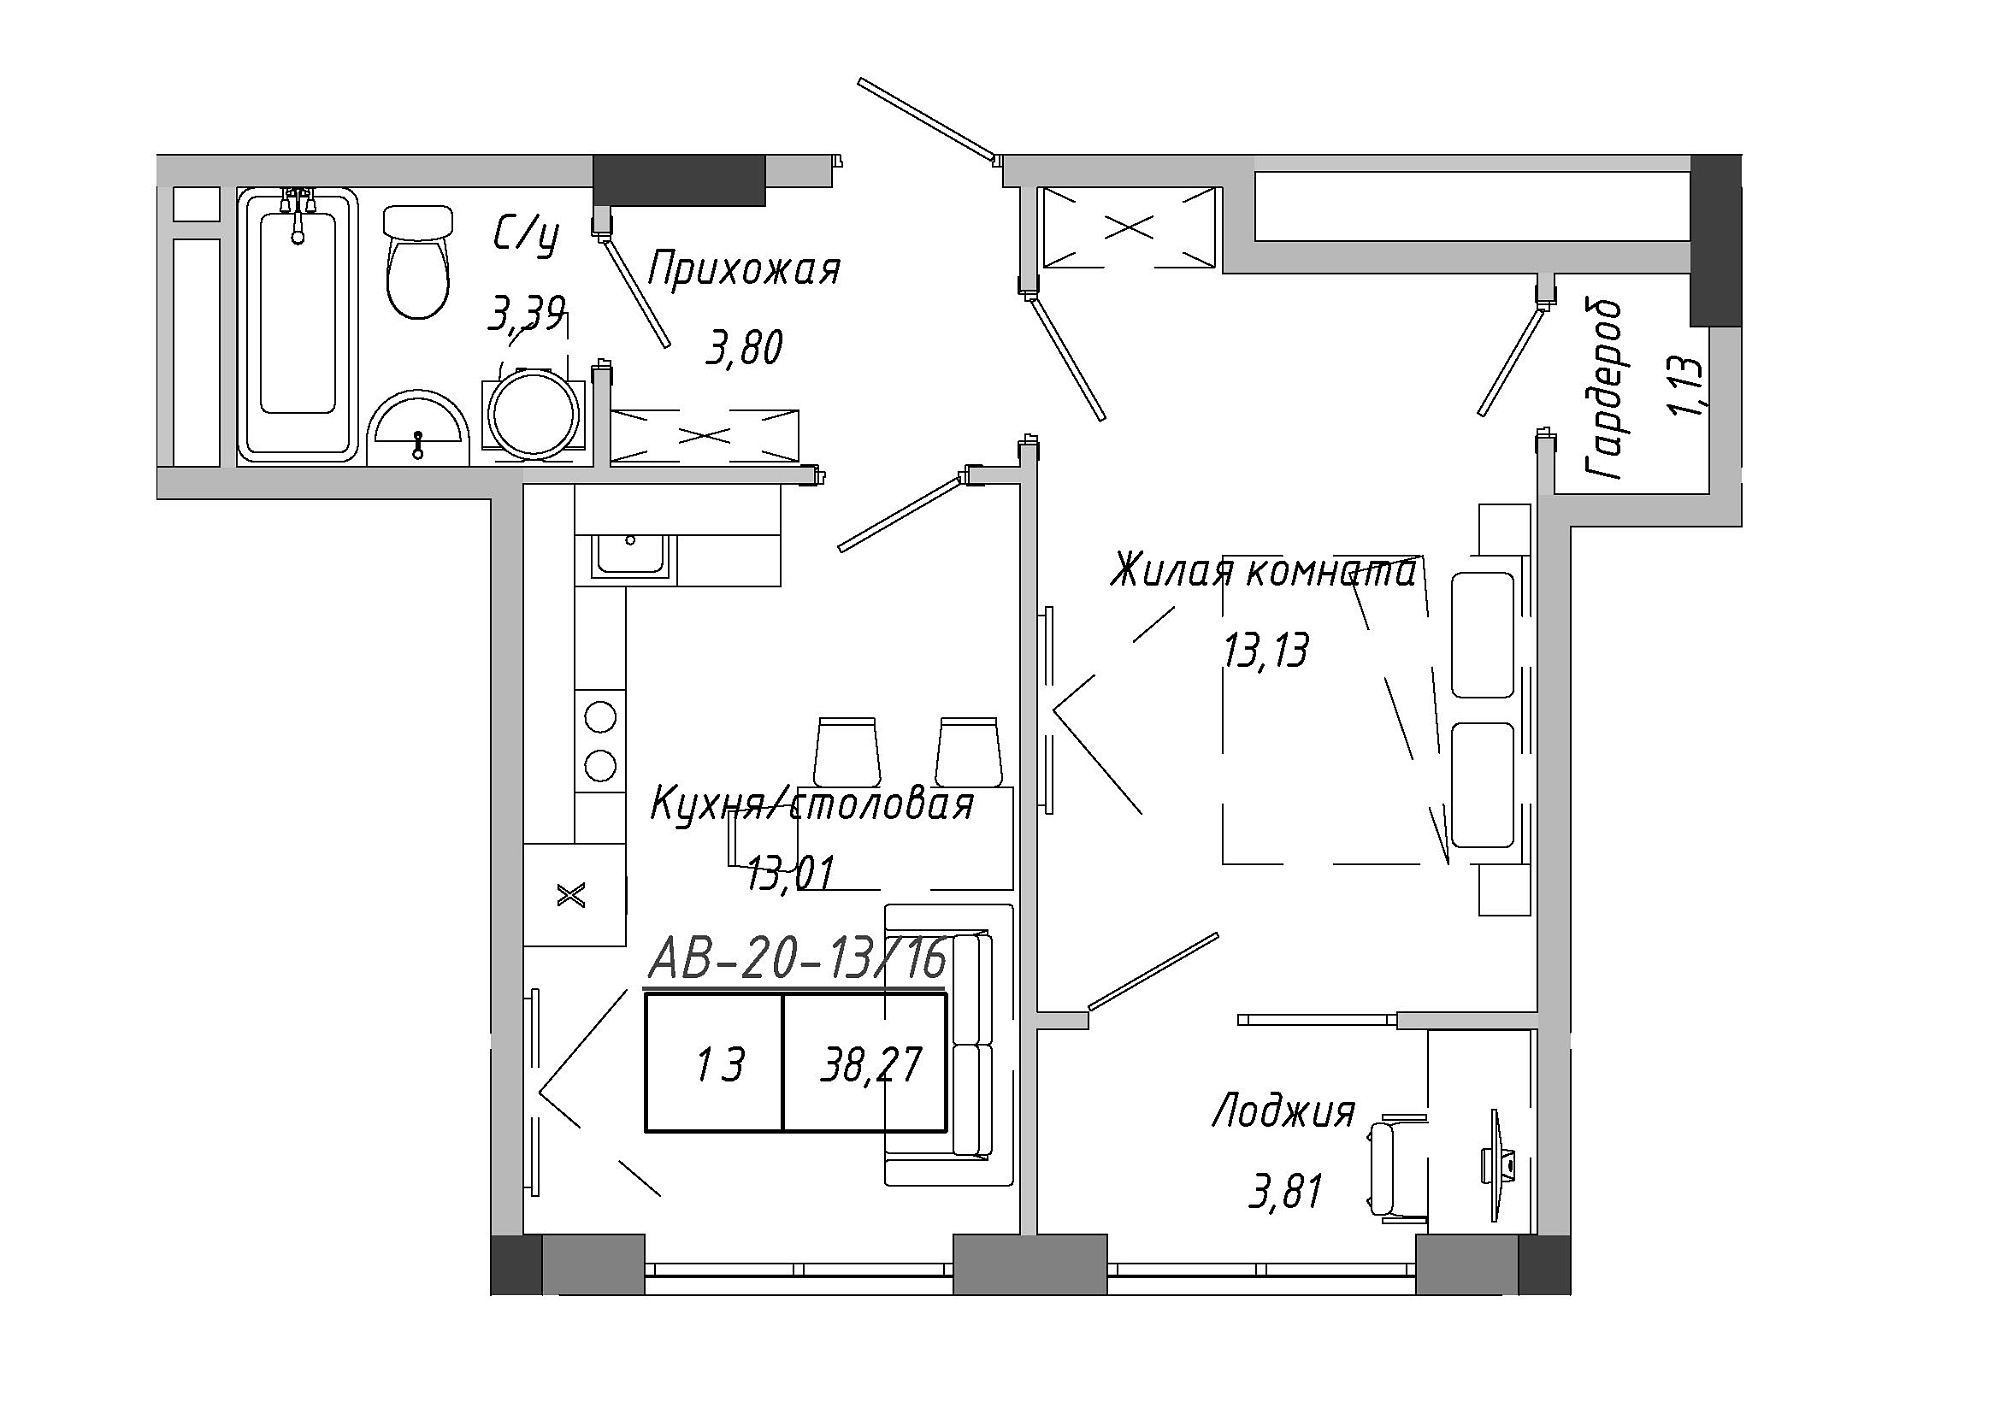 Планування 1-к квартира площею 38.27м2, AB-20-13/00116.